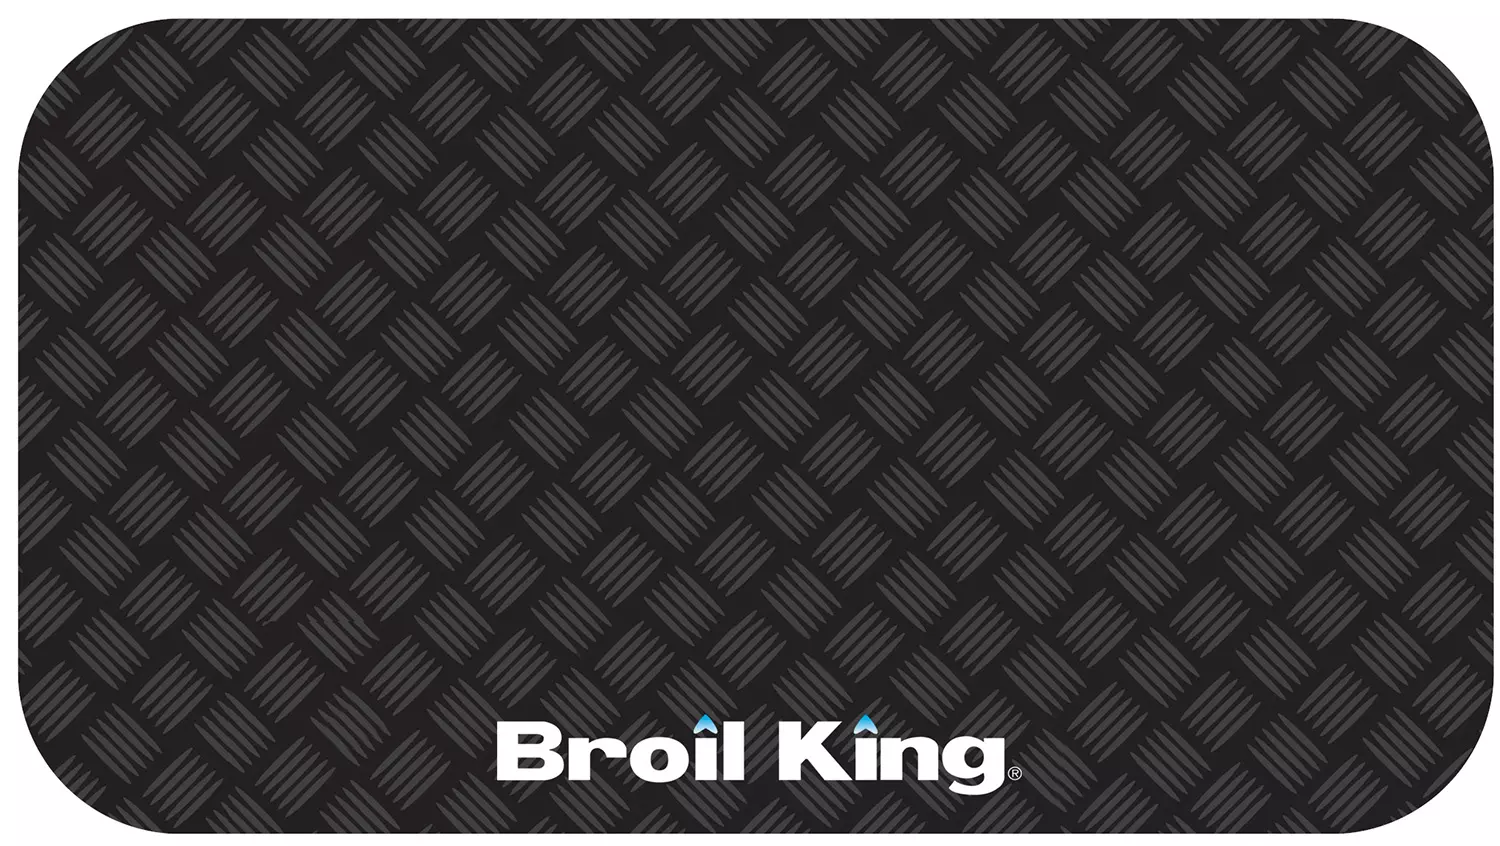 Broil King Grillmatte schwarz 180 x 90 cm